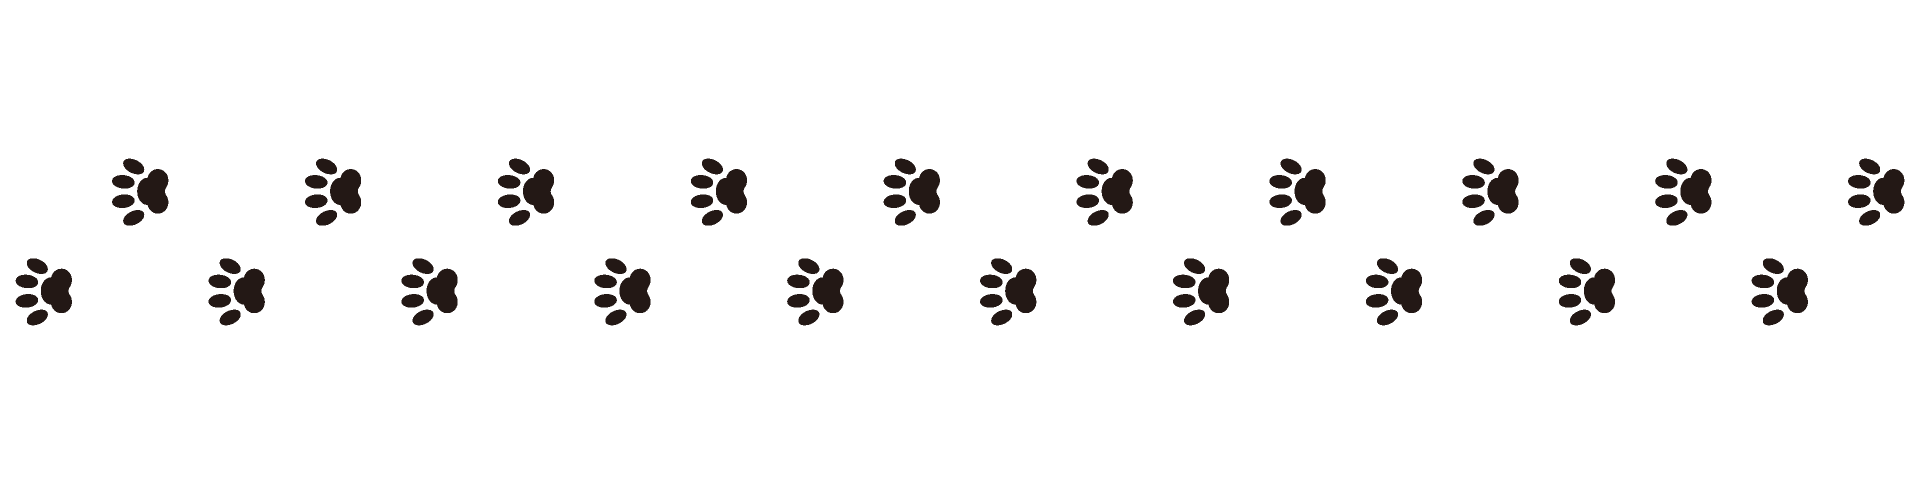 犬の足跡ライン線